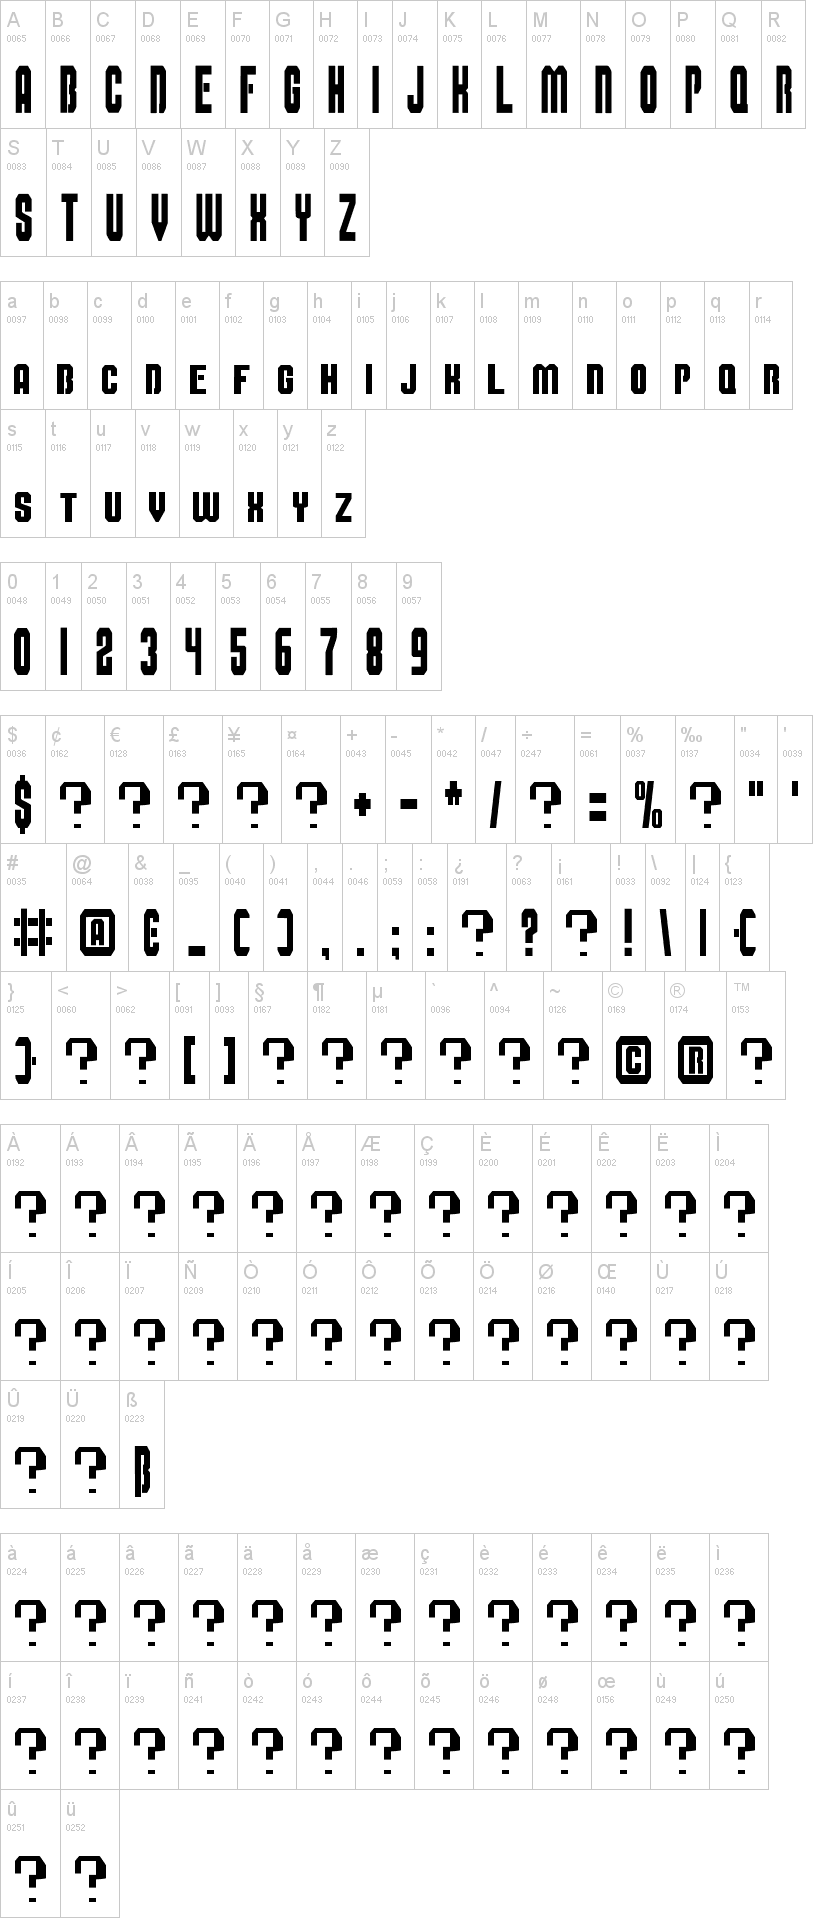 Super Mario Bros Alphabet